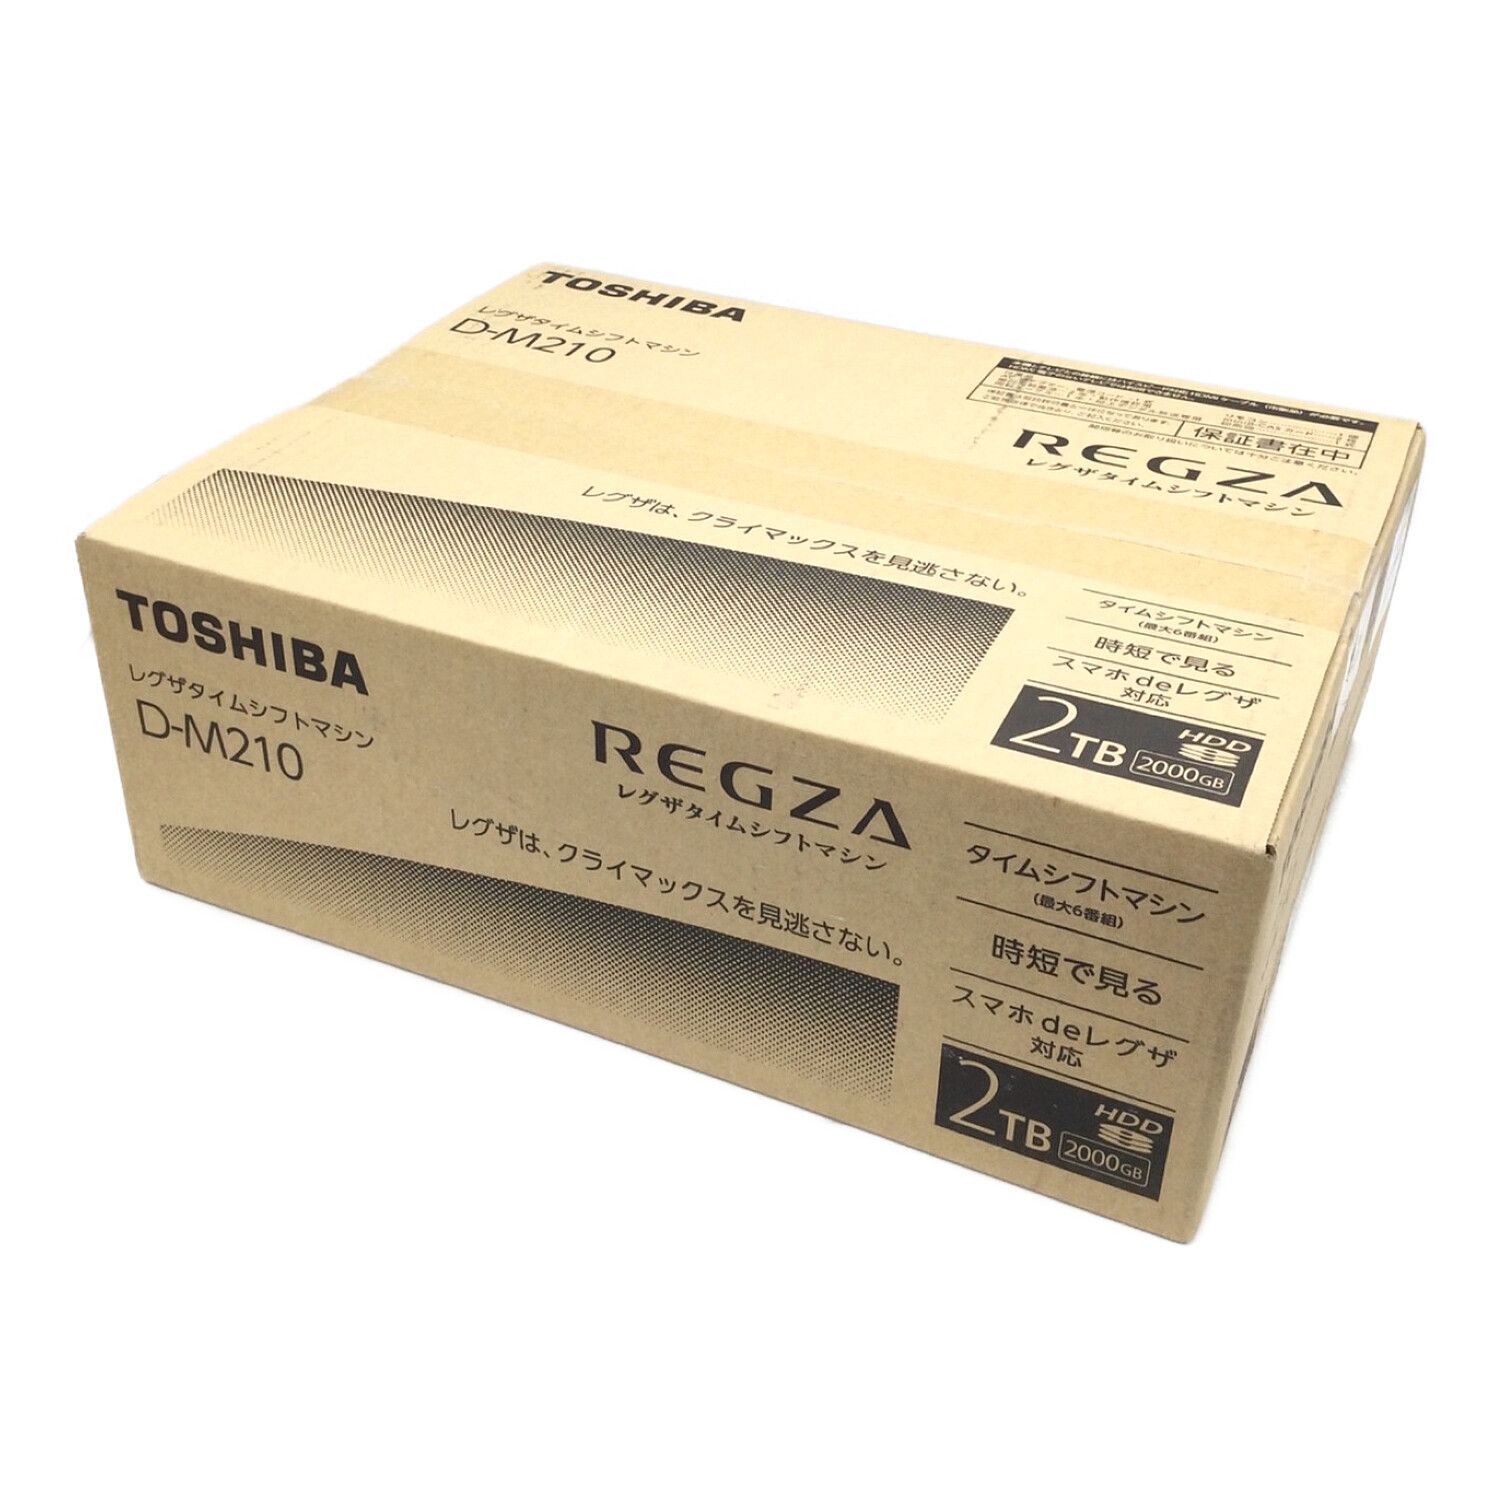 再再販 kigawa-SHOPD-M210 タイムシフトマシンハードディスク 2TB